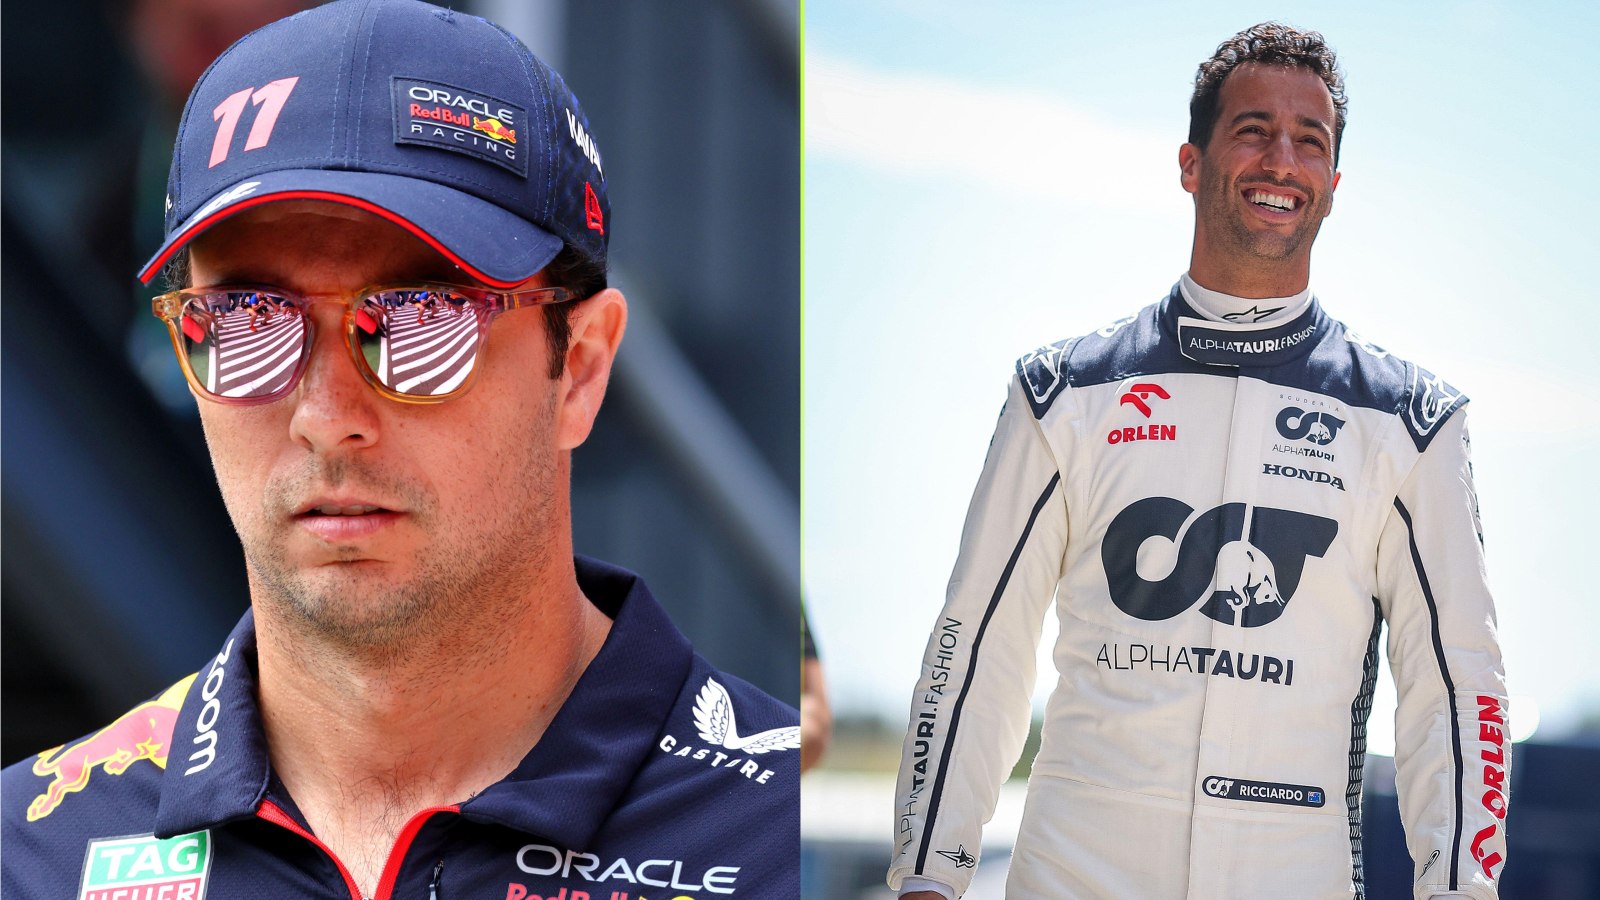 Helmut Marko's major Sergio Perez boost amidst Daniel Ricciardo